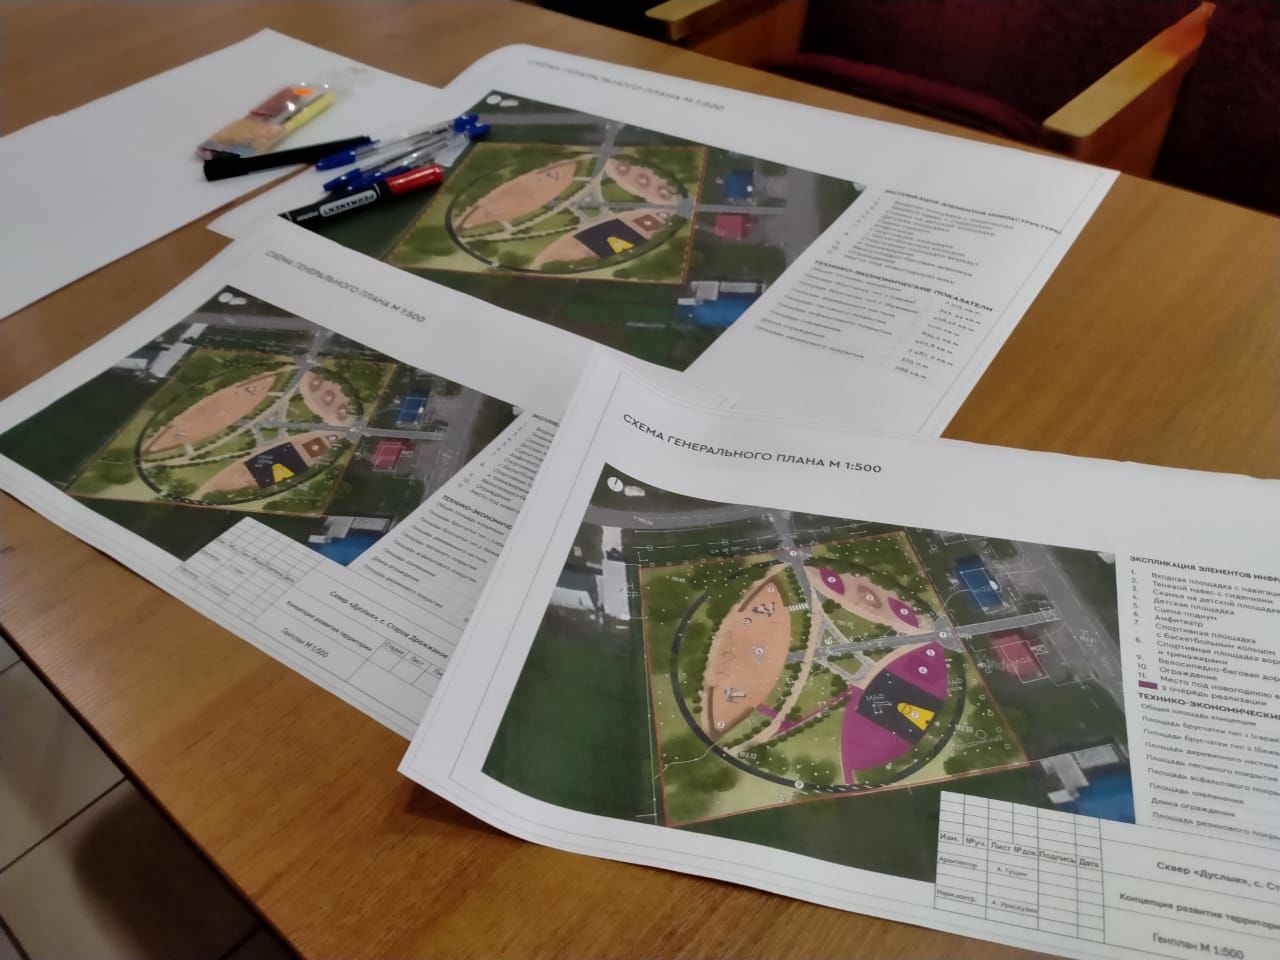 Дрожжановские активисты обсудили проект по &nbsp;строительству парка «Дуслык» поселка «Дачный»